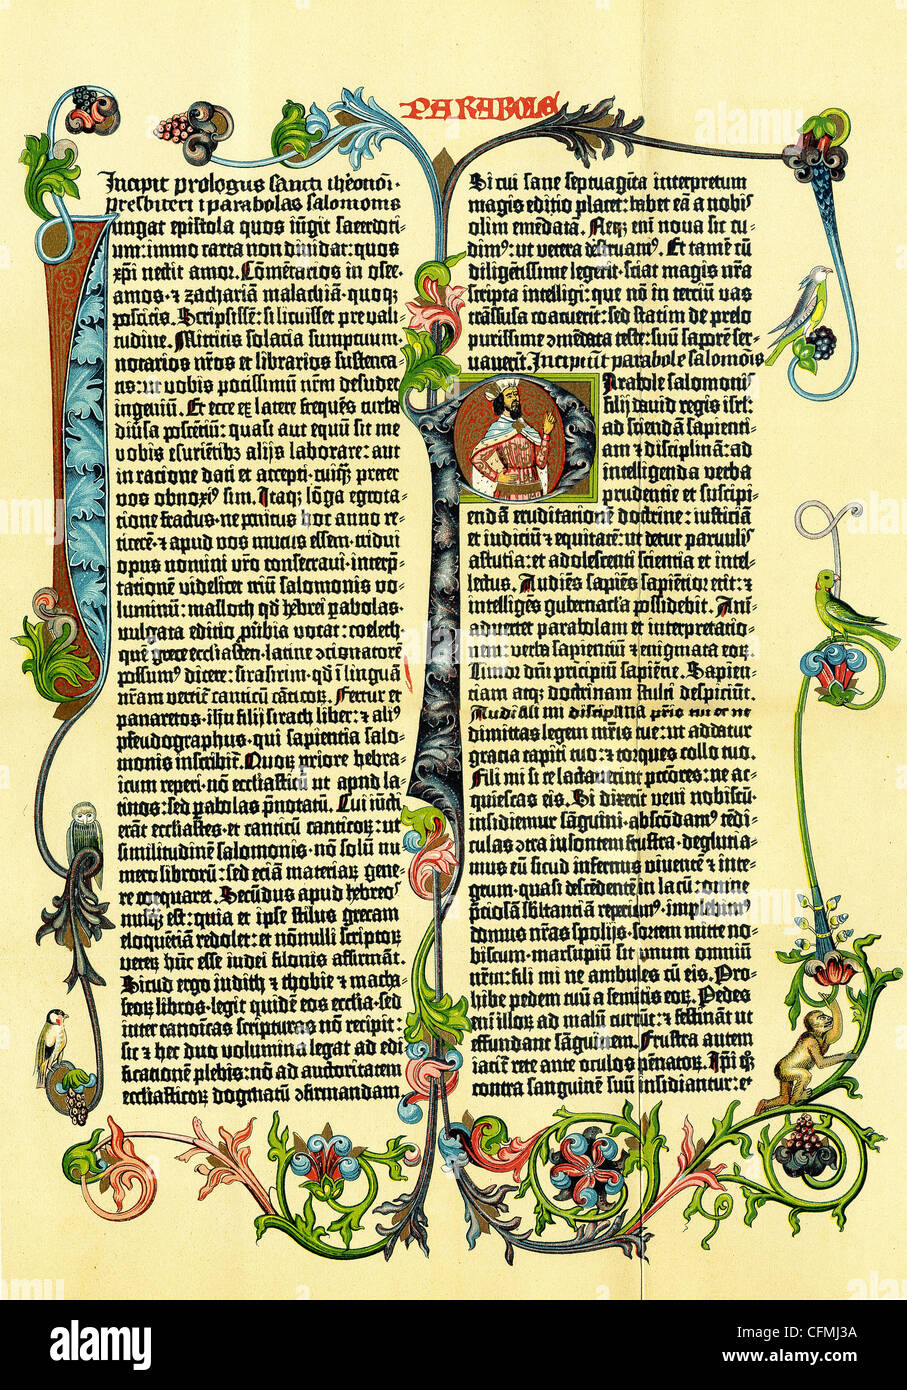 Esta página está ilustrado de la Biblia de Gutenberg, también conocida como la Biblia de 42 líneas, fue producido alrededor de 1453-1456. Foto de stock